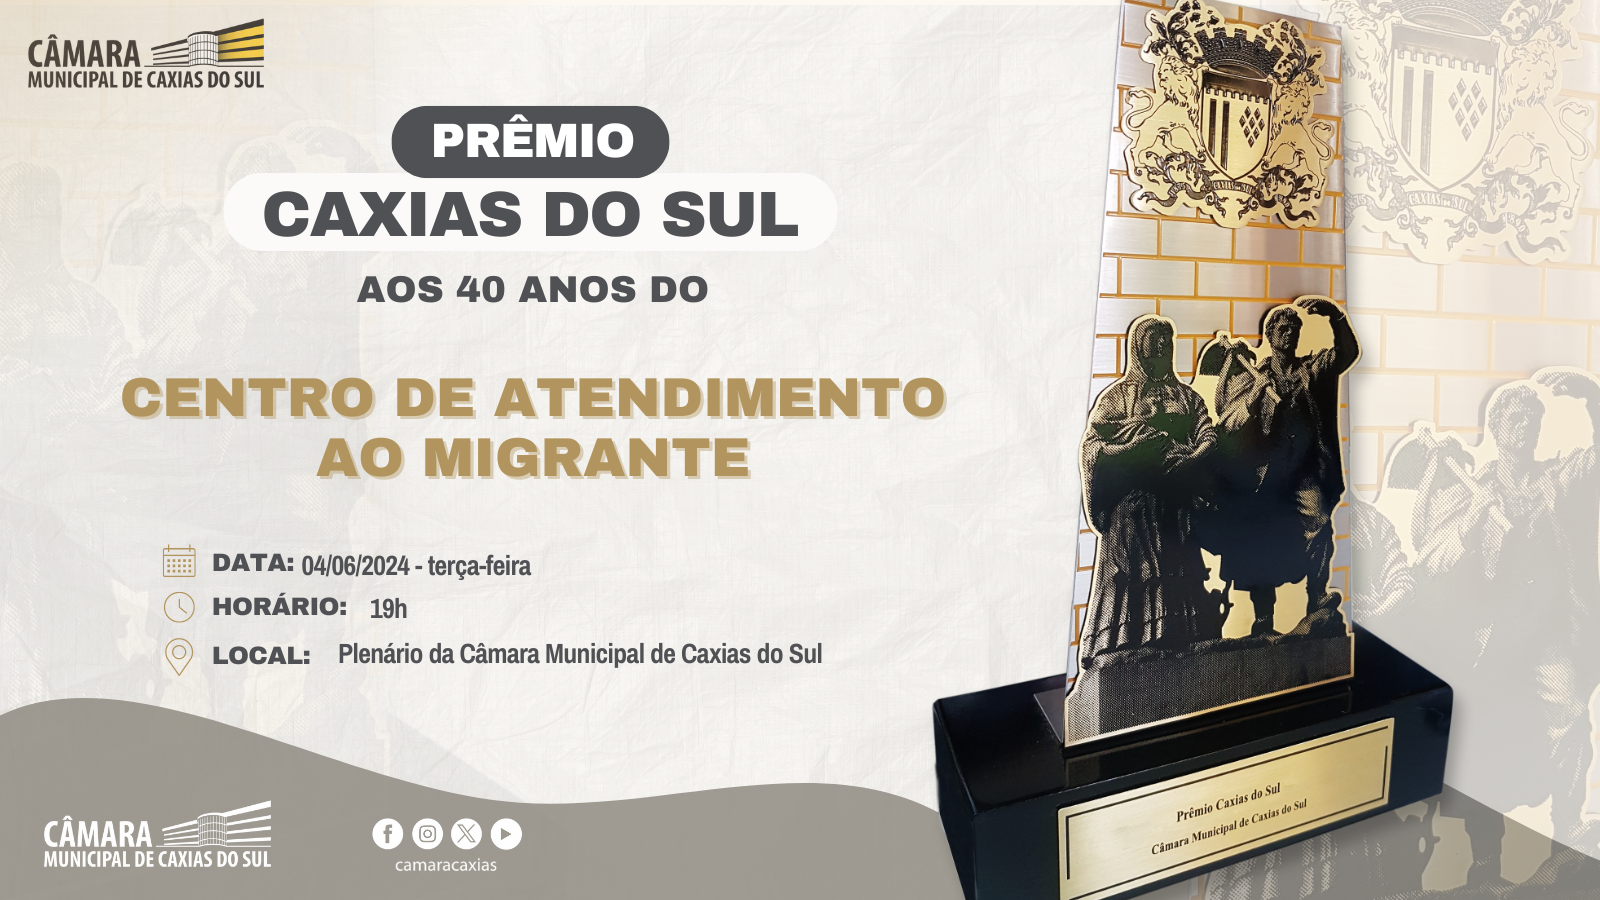 Câmara Municipal de Caxias do Sul celebrará os 40 anos do Centro de Atendimento ao Migrante